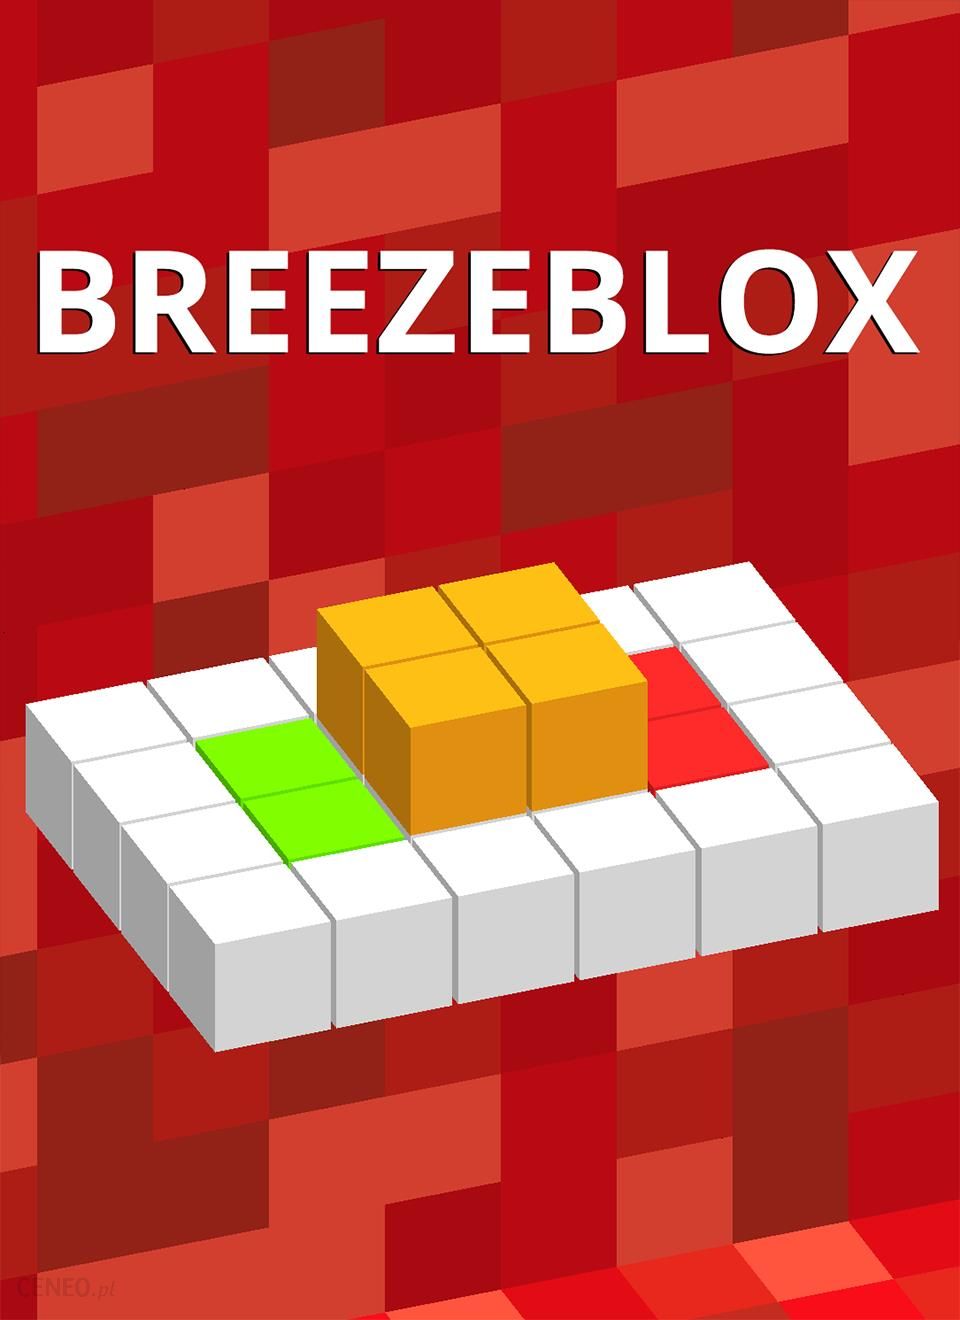 breezeblox